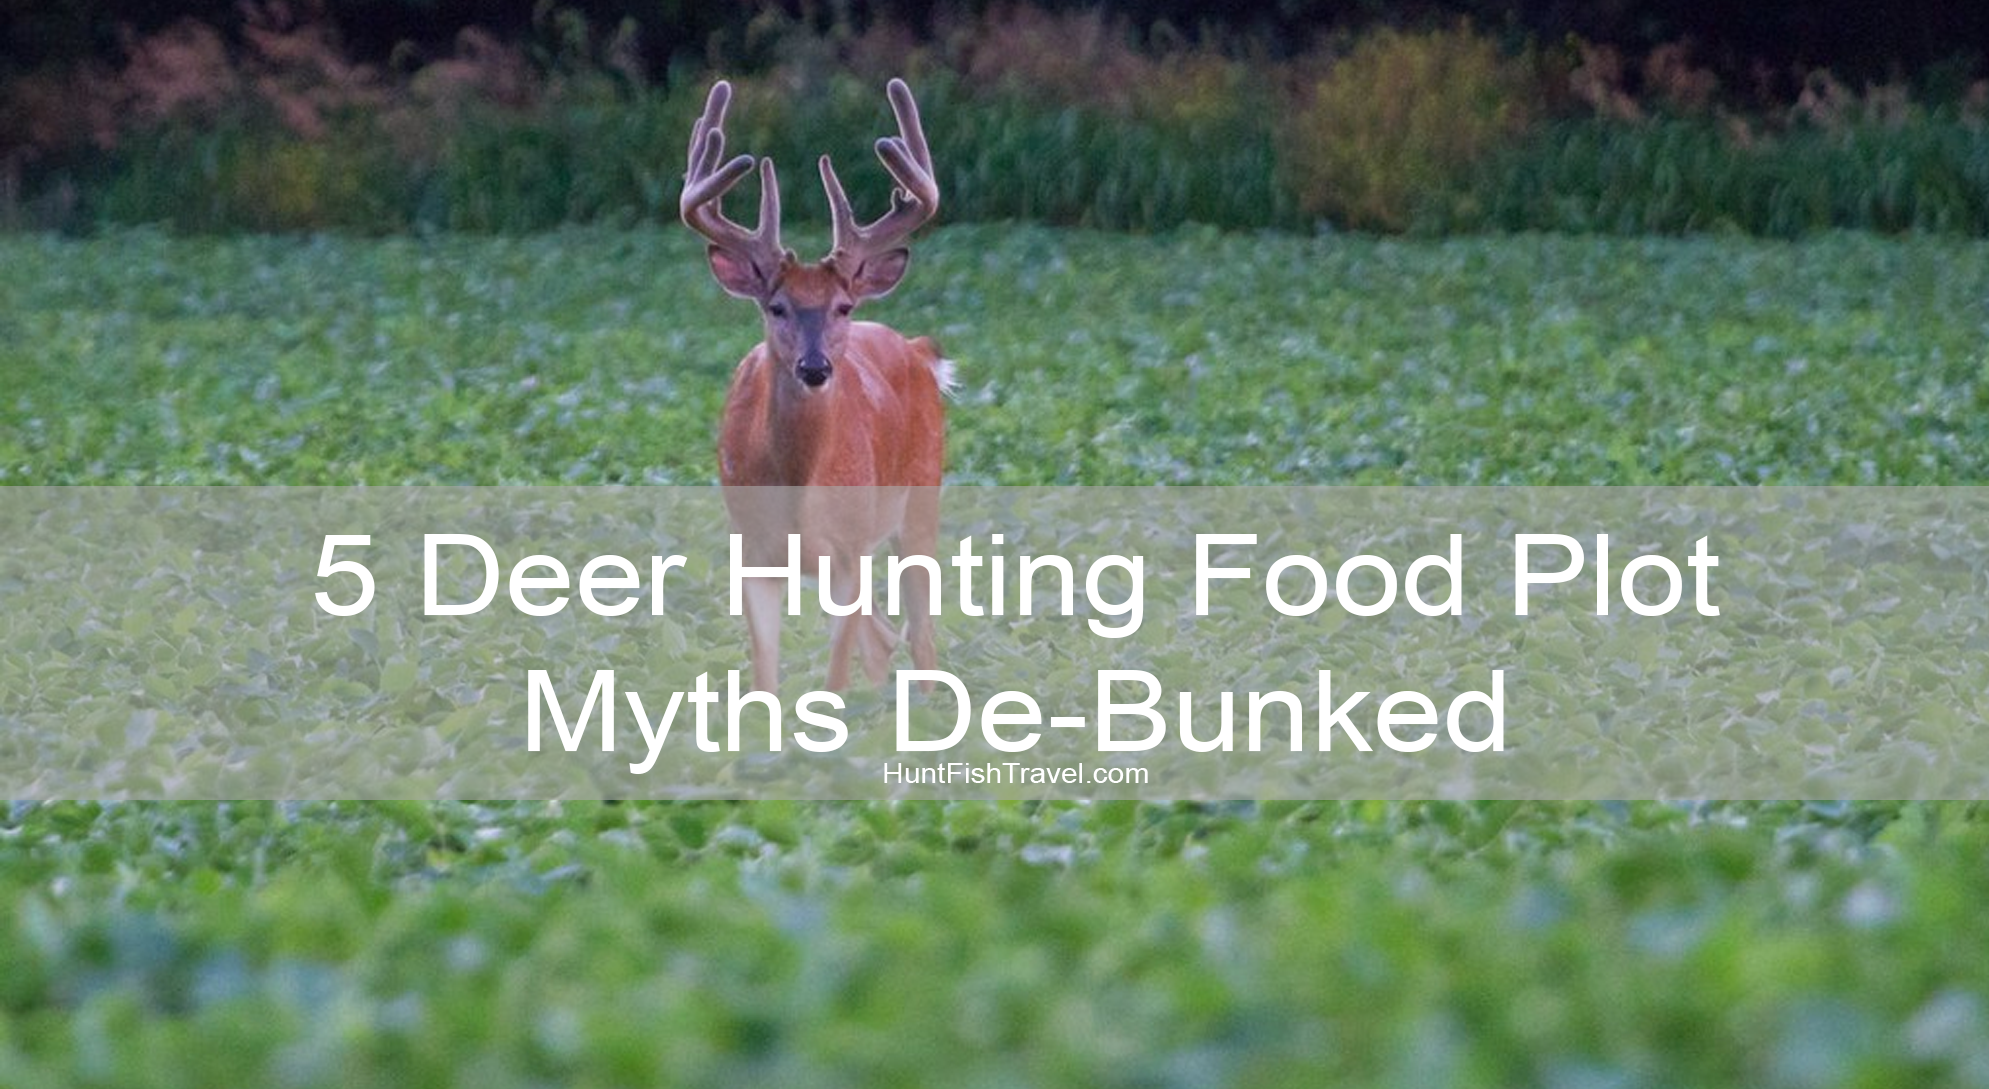 Jim Willes 5 Deer Hunting Food Plot Myths De-Bunked